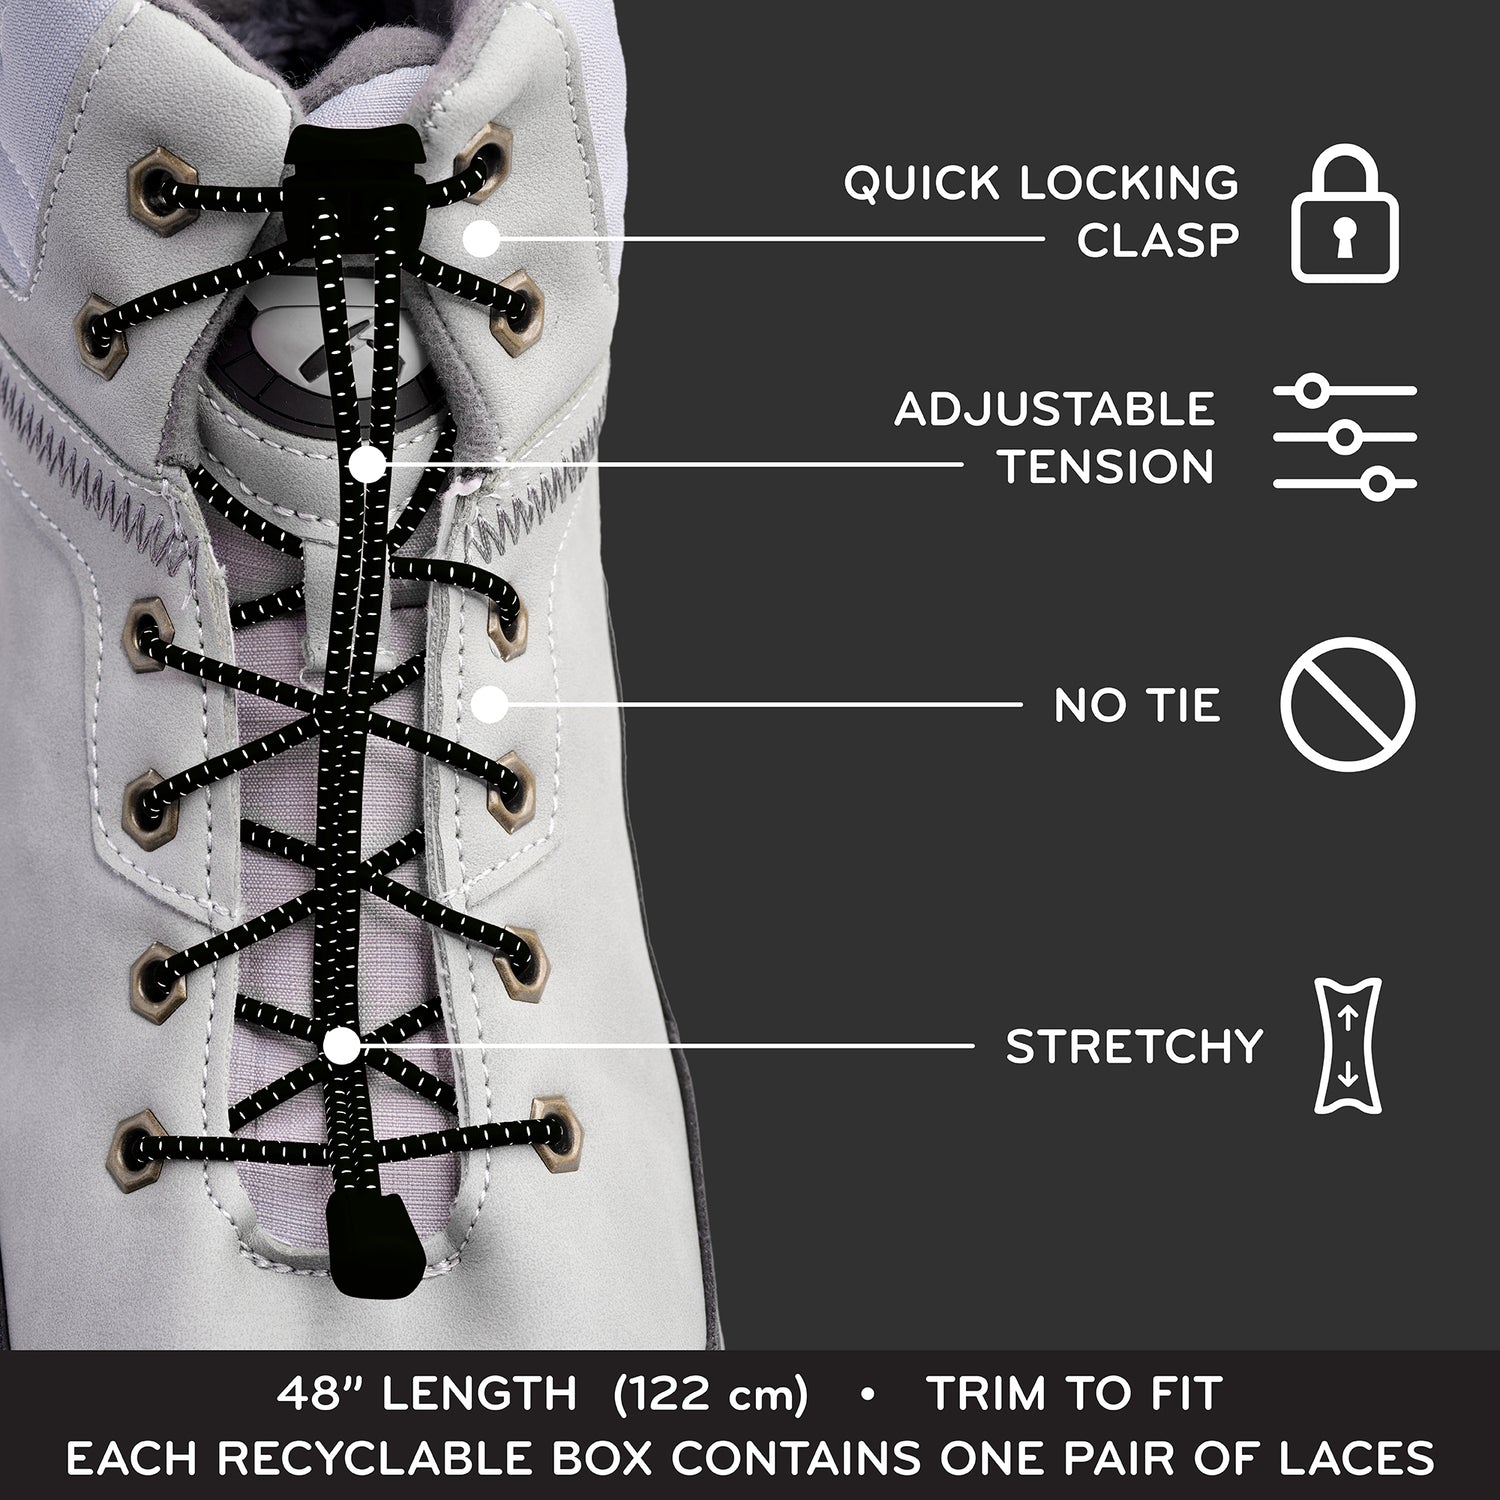 50 Custom Hit Shoe Care Lock Laces No Tie Shoelaces